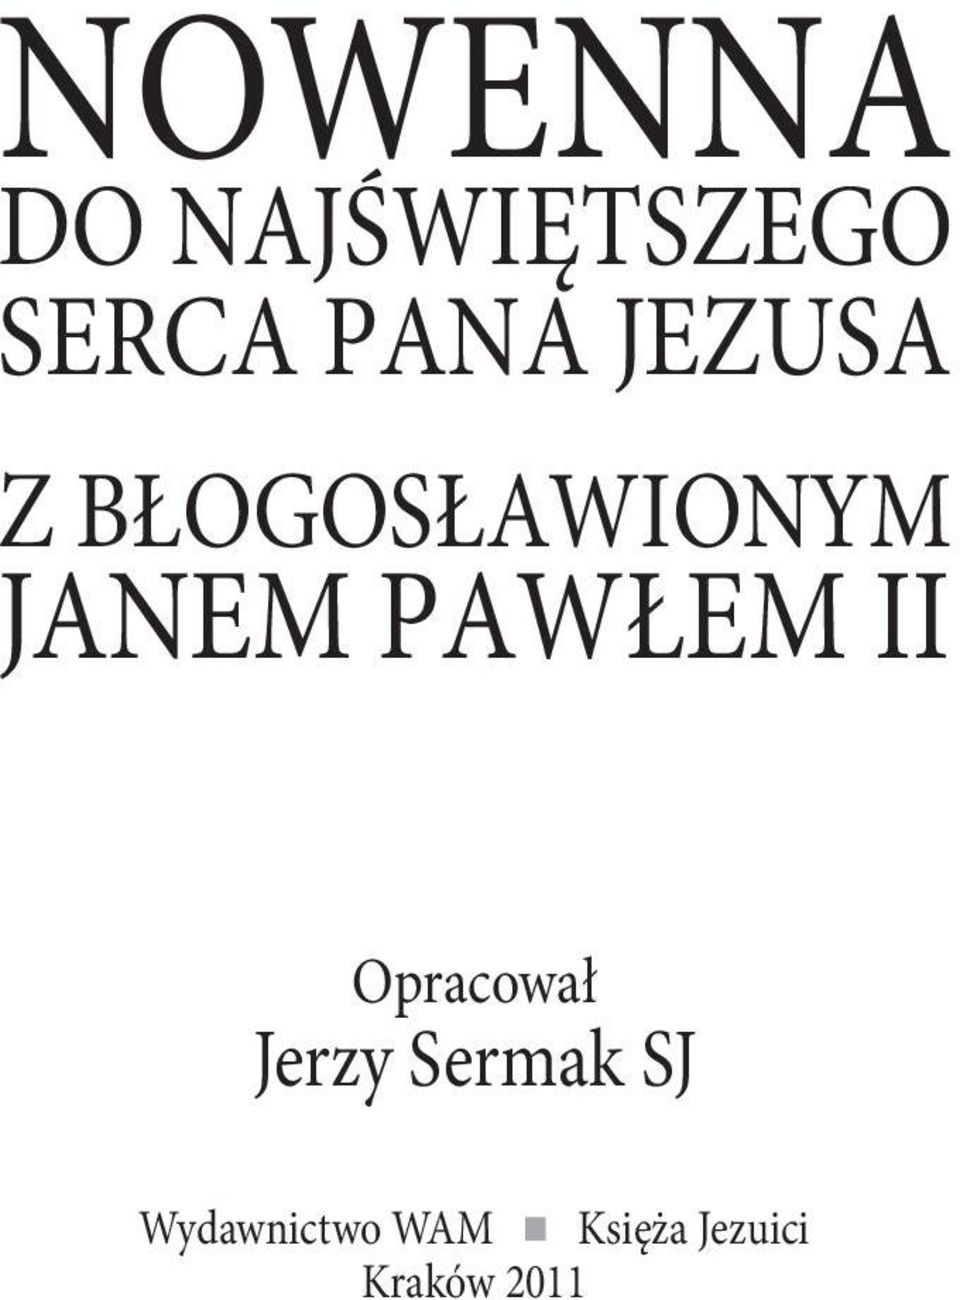 PAWŁEM II Opracował Jerzy Sermak SJ